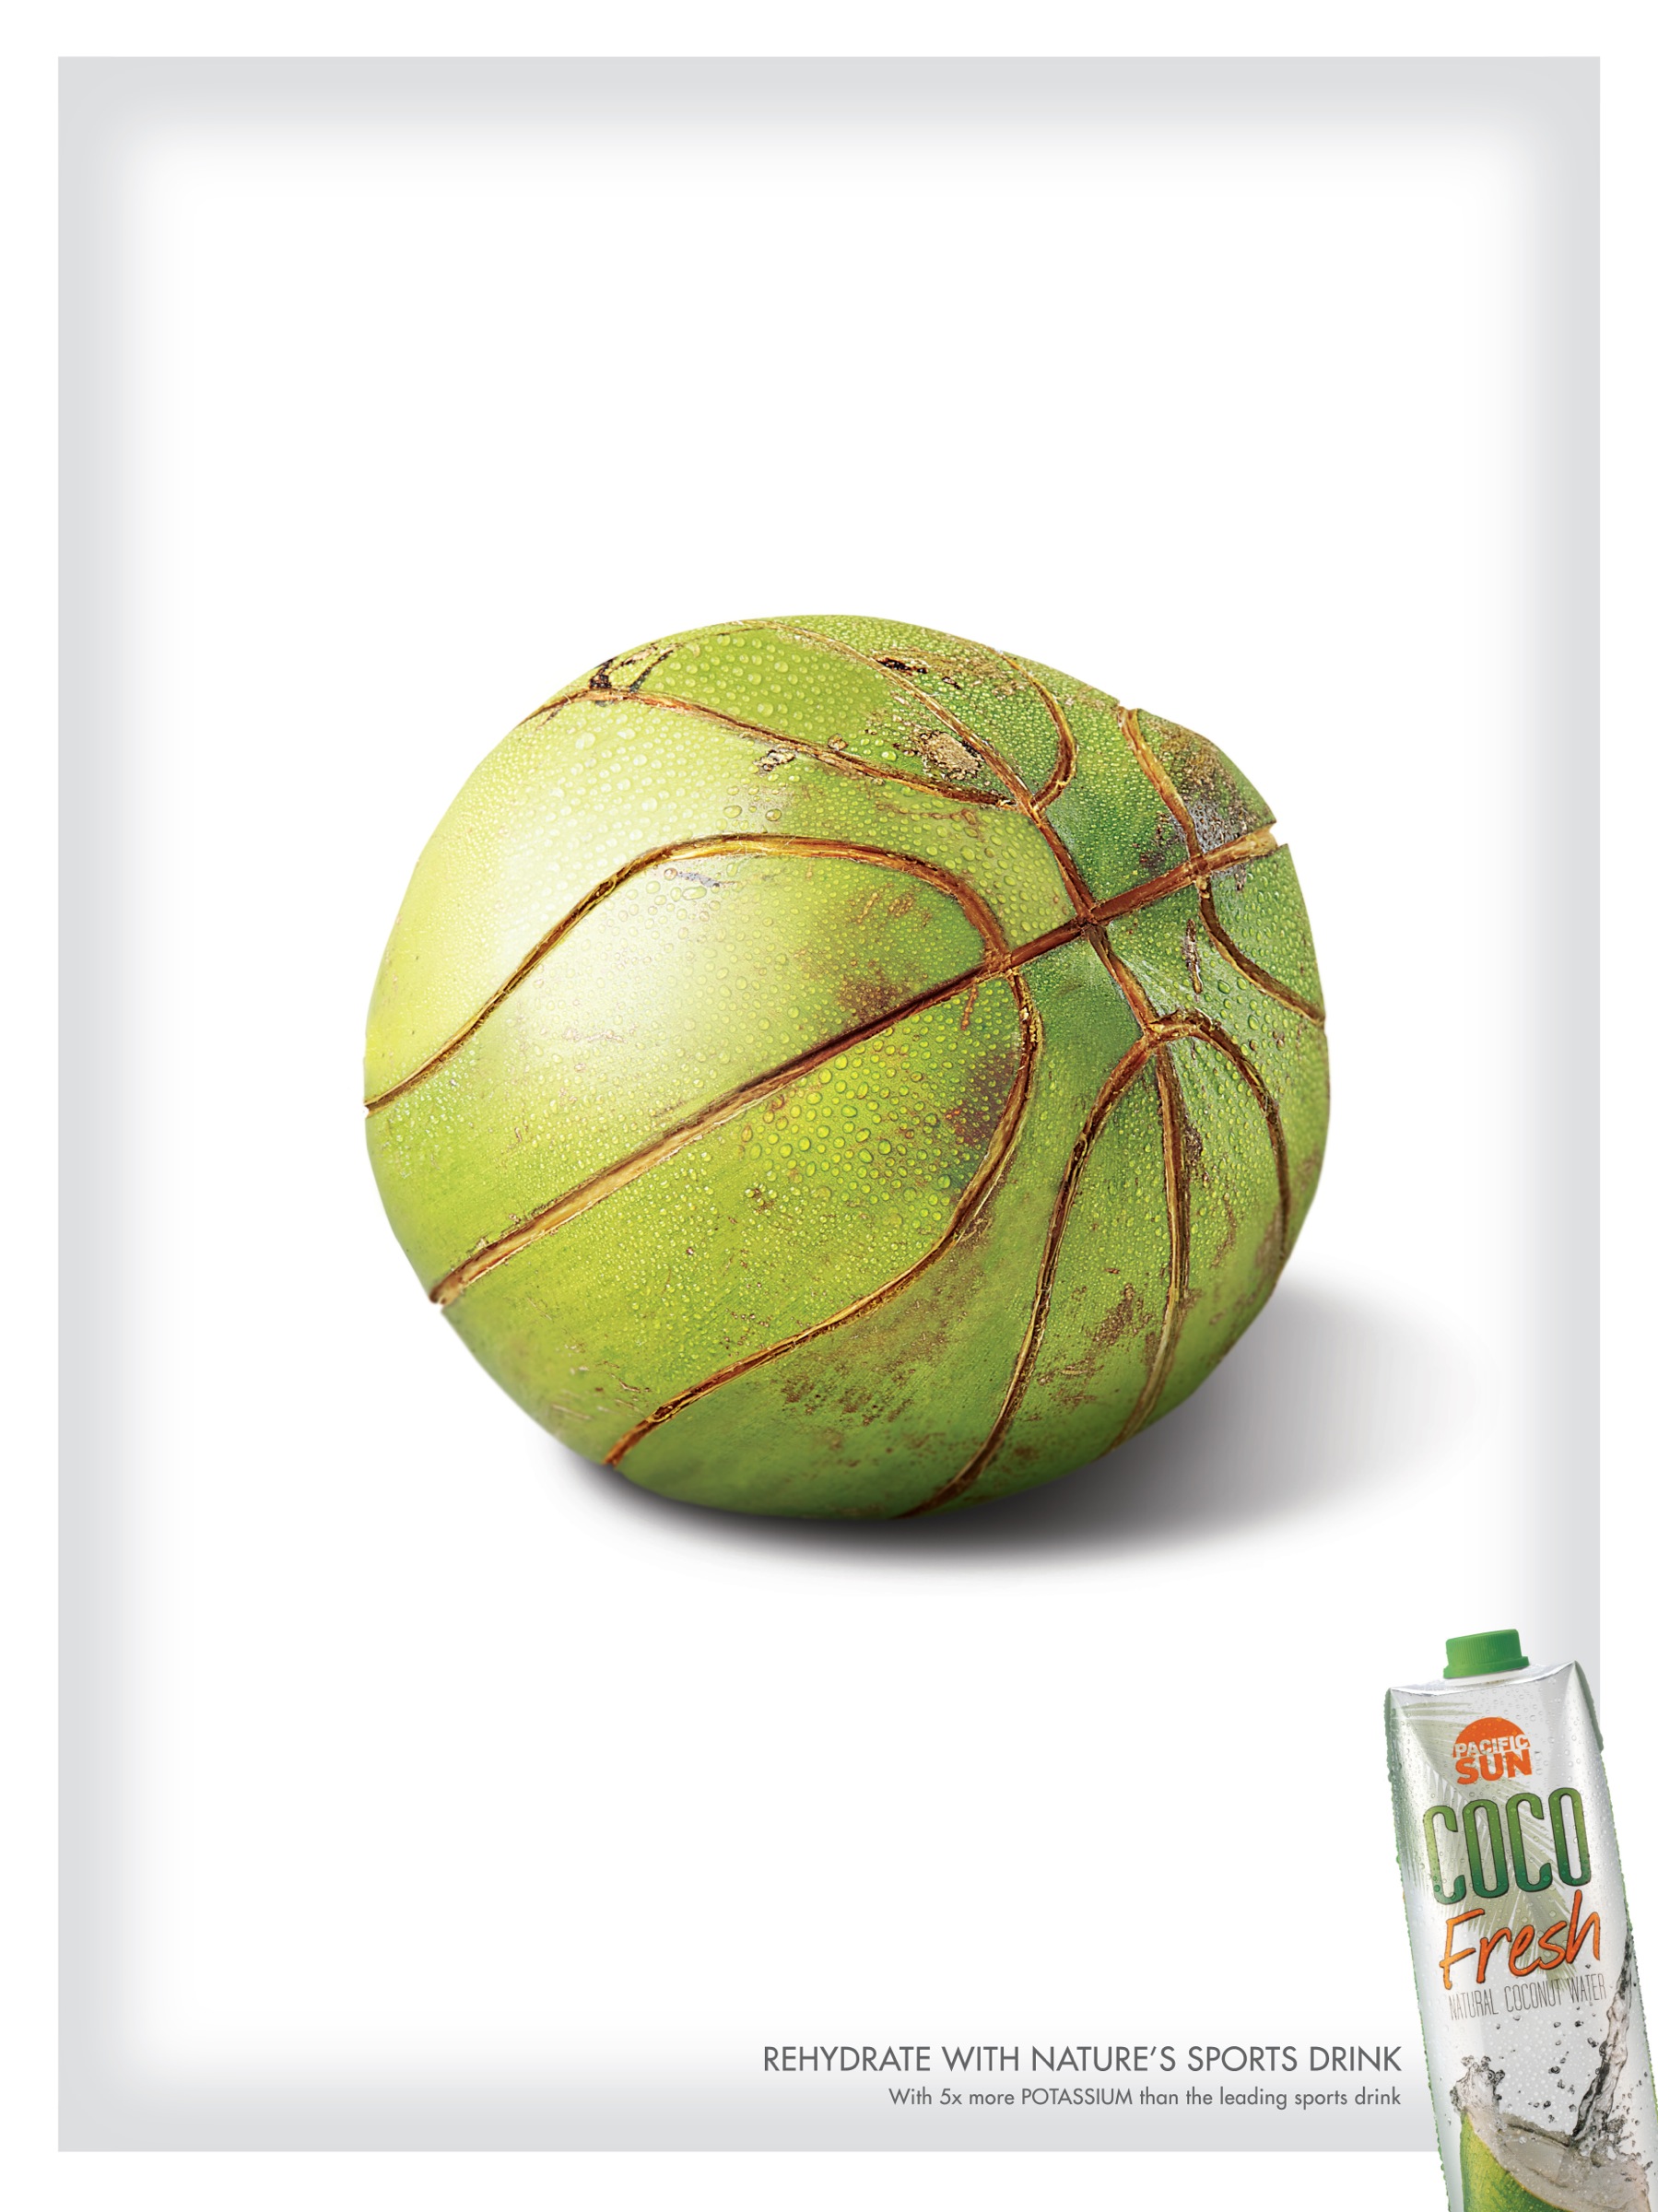 菲律宾Coco Fresh饮料平面广告设计